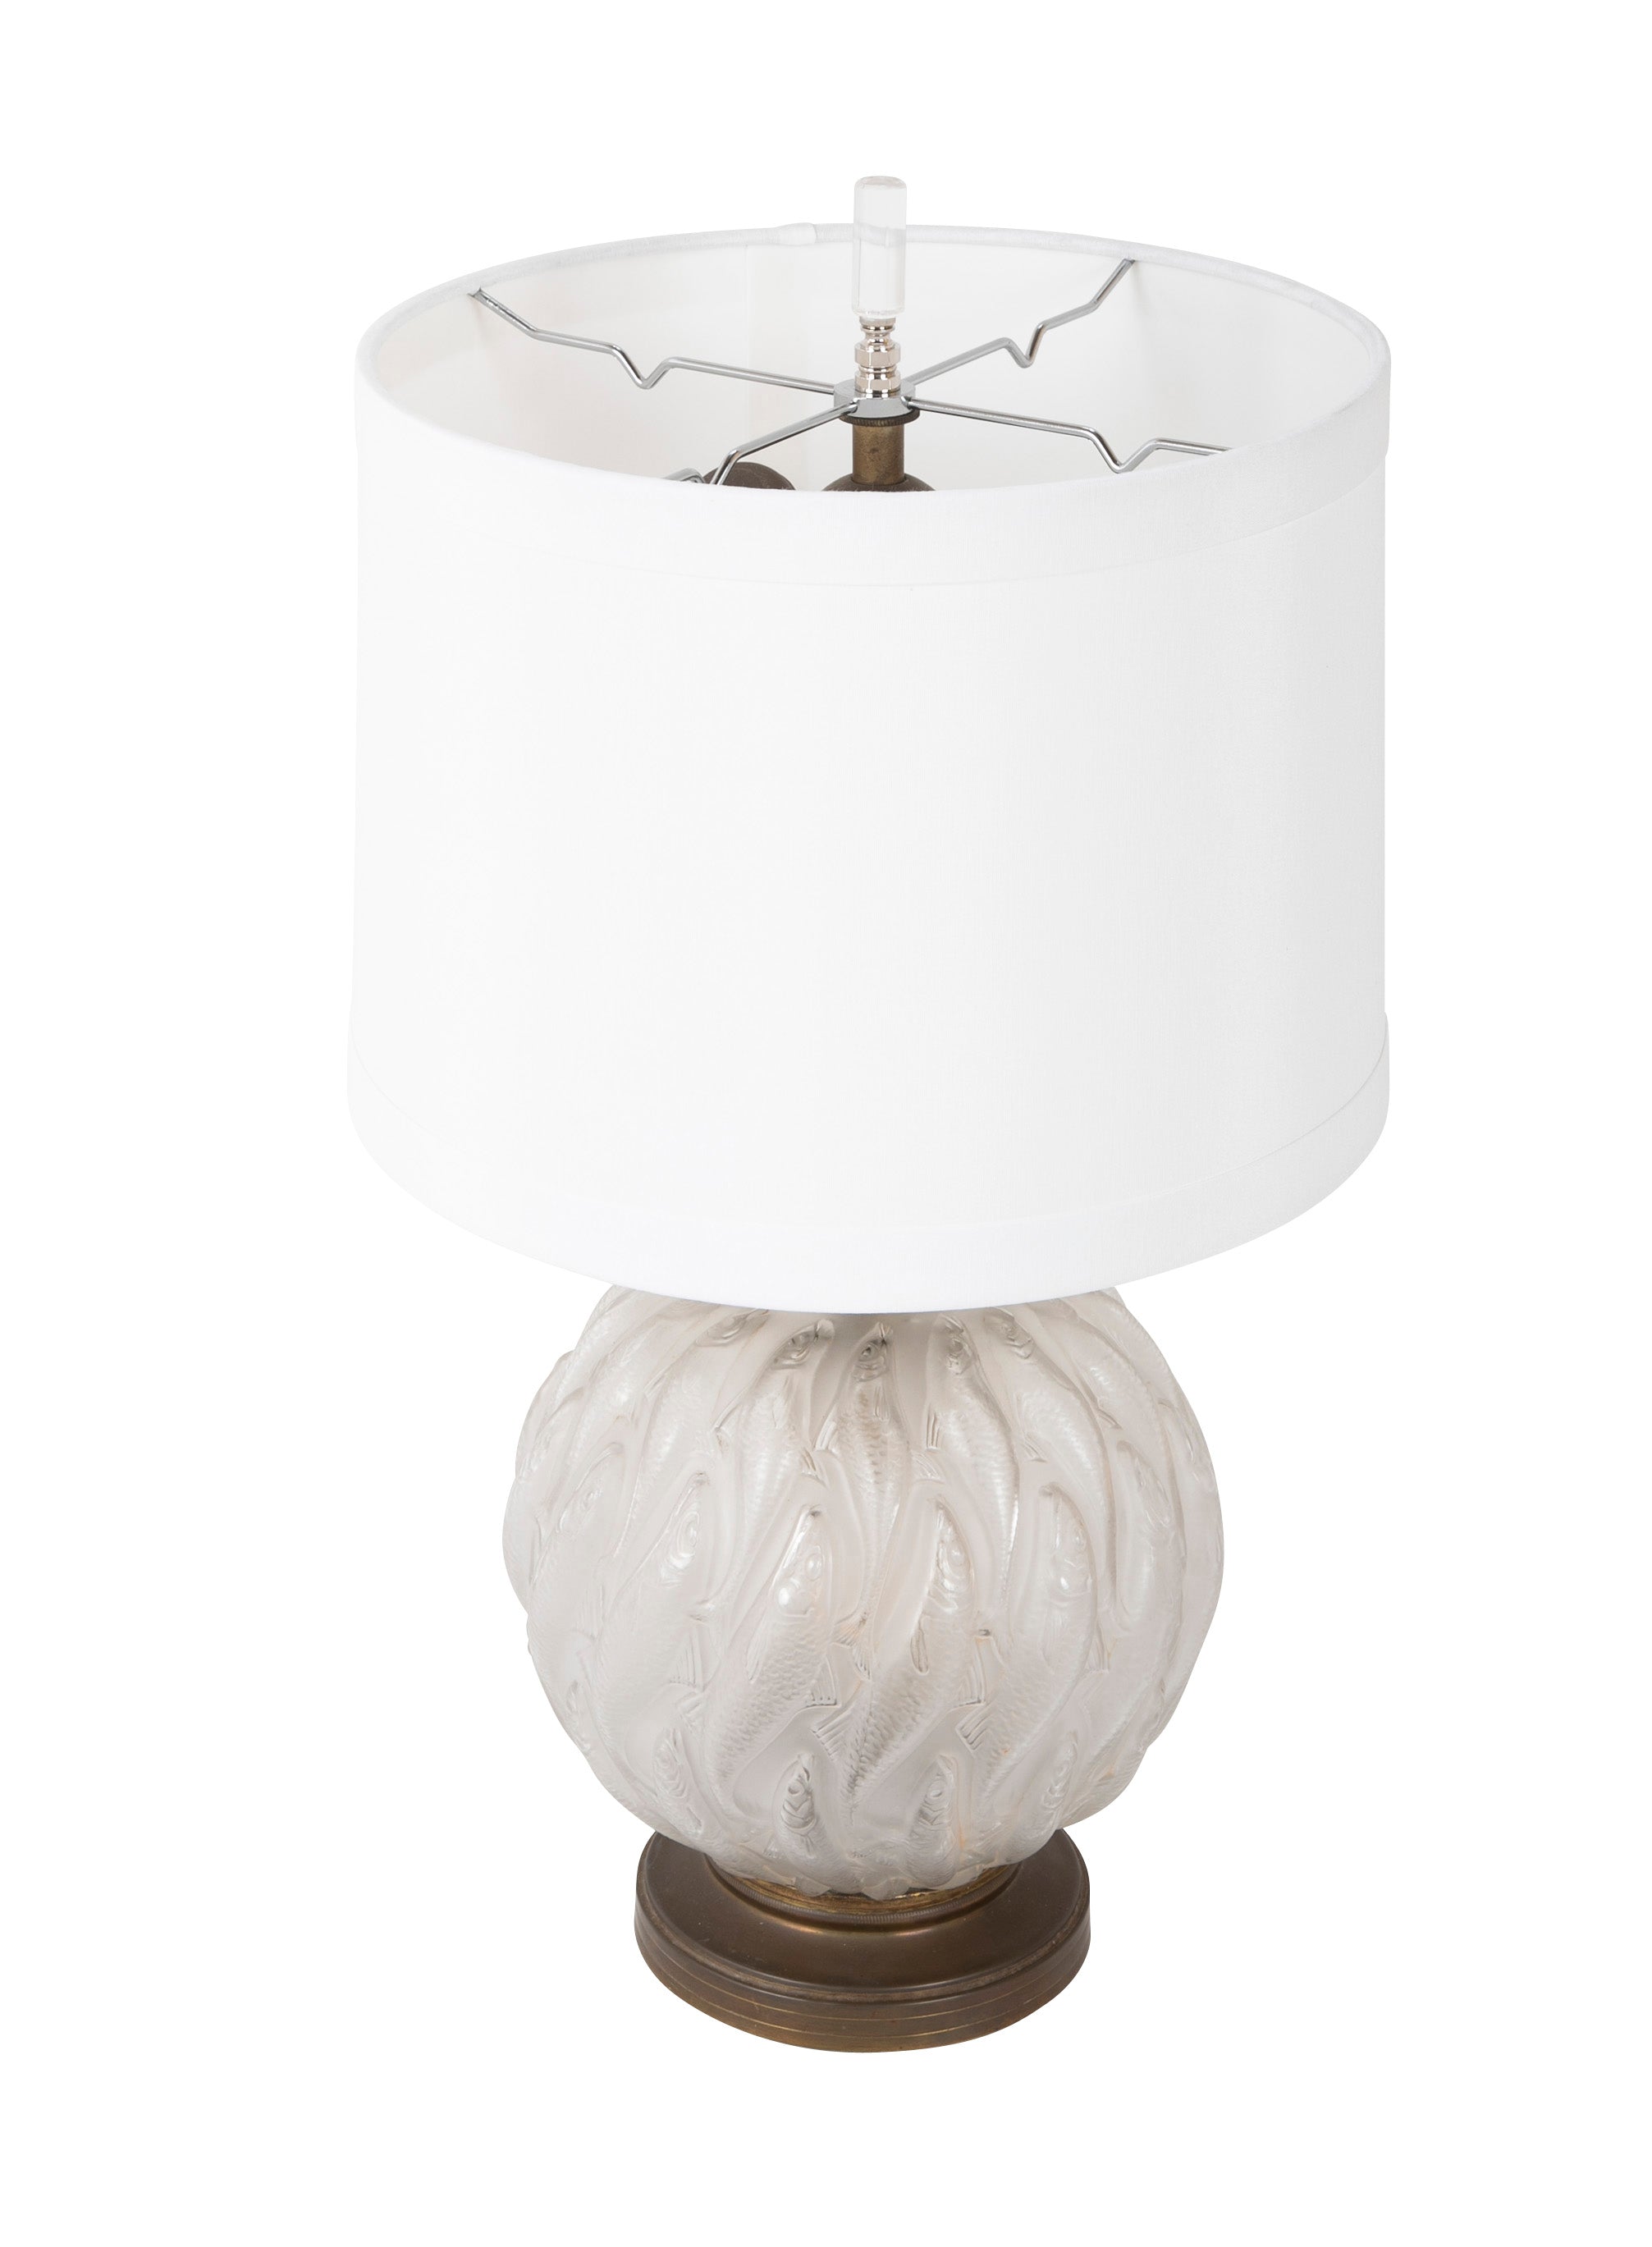 Rene Lalique "Marissa" Vase now a Lamp